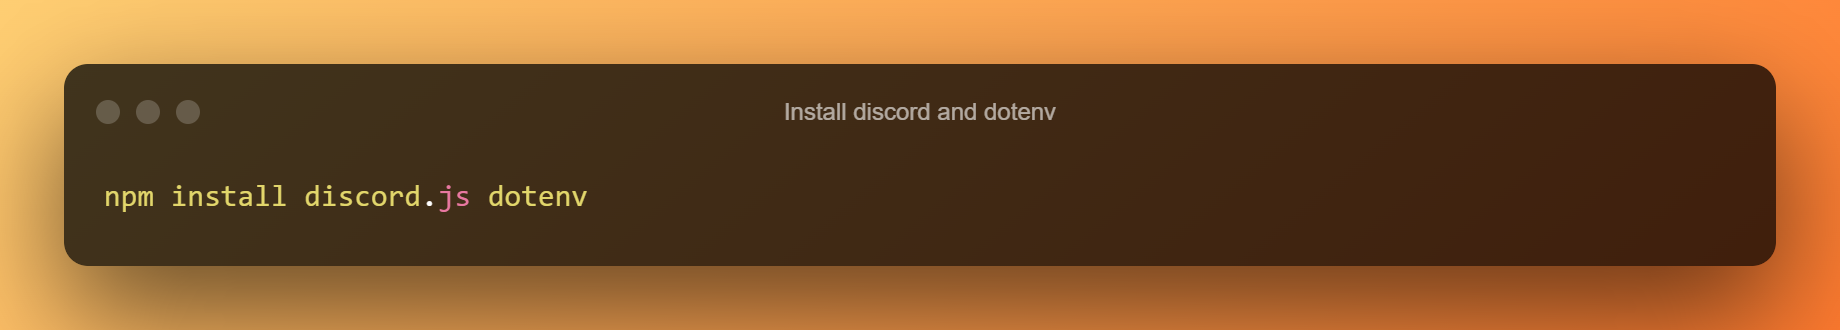 Instalirajte Discord i Dotenv